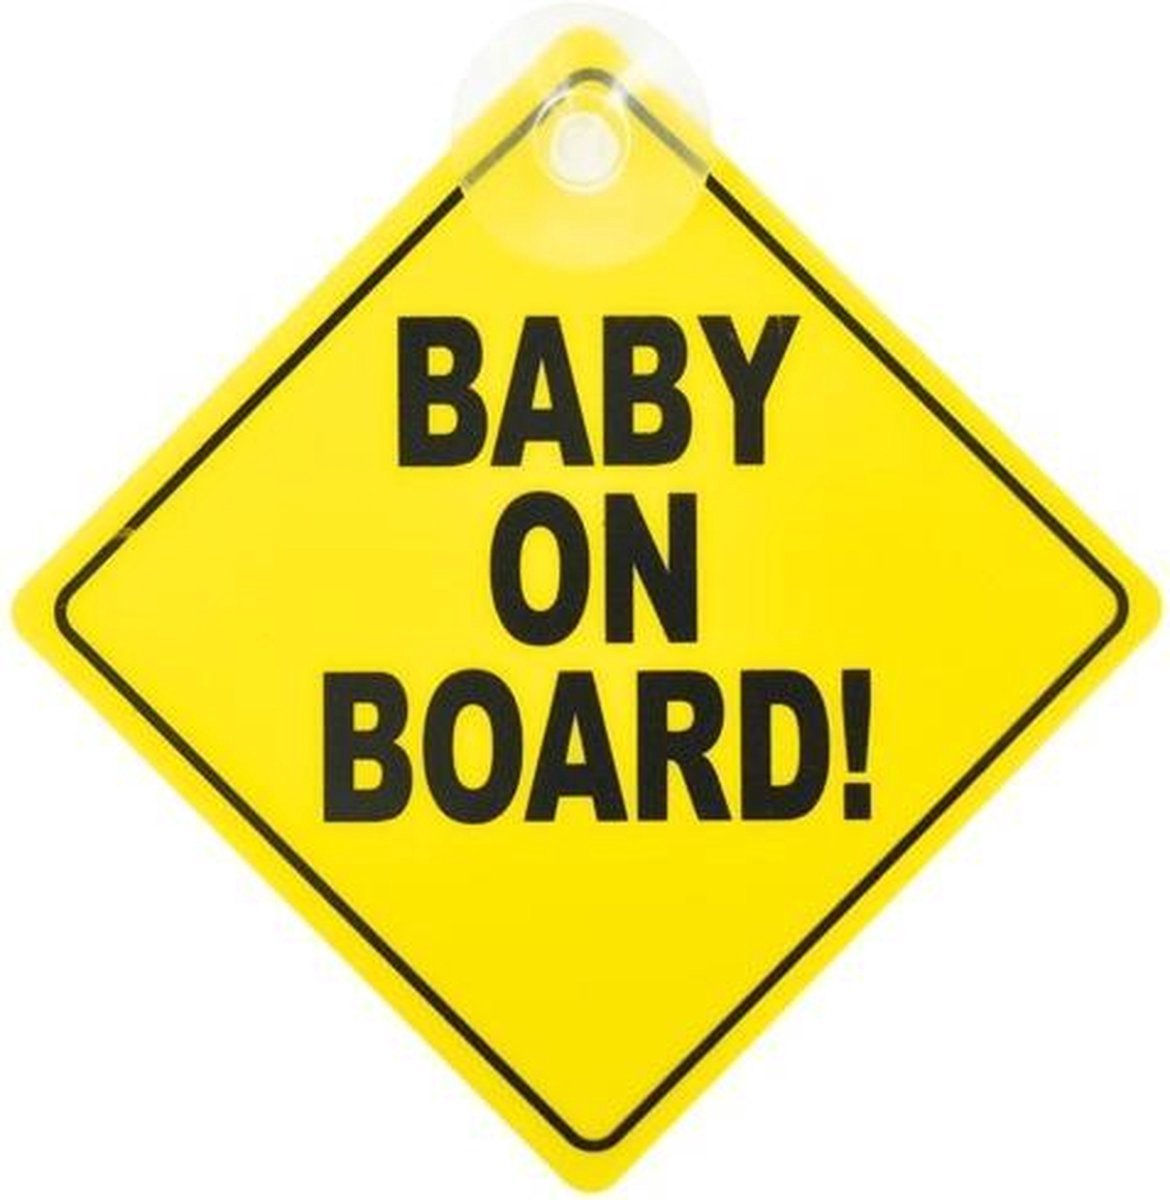 Bébé à bord sur losange PVC de 15 x 15 cm style road sign avec ventouse